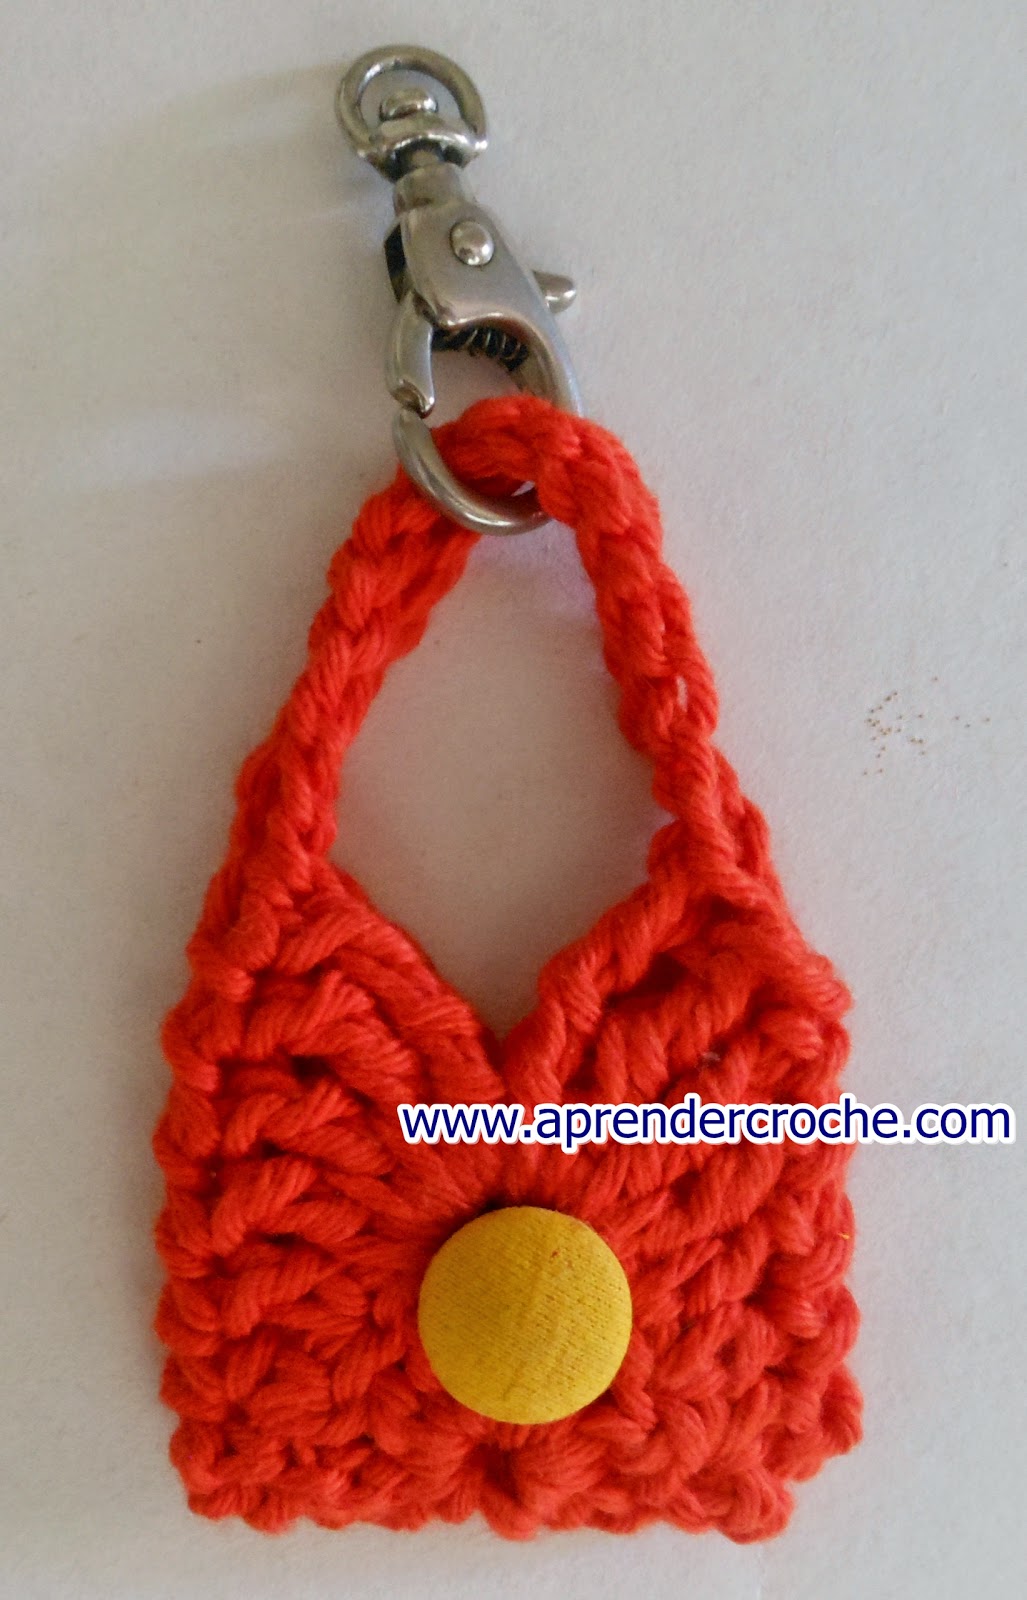 aprender croche com mini bolsas para chaveiros lembrancinhas ou decoração